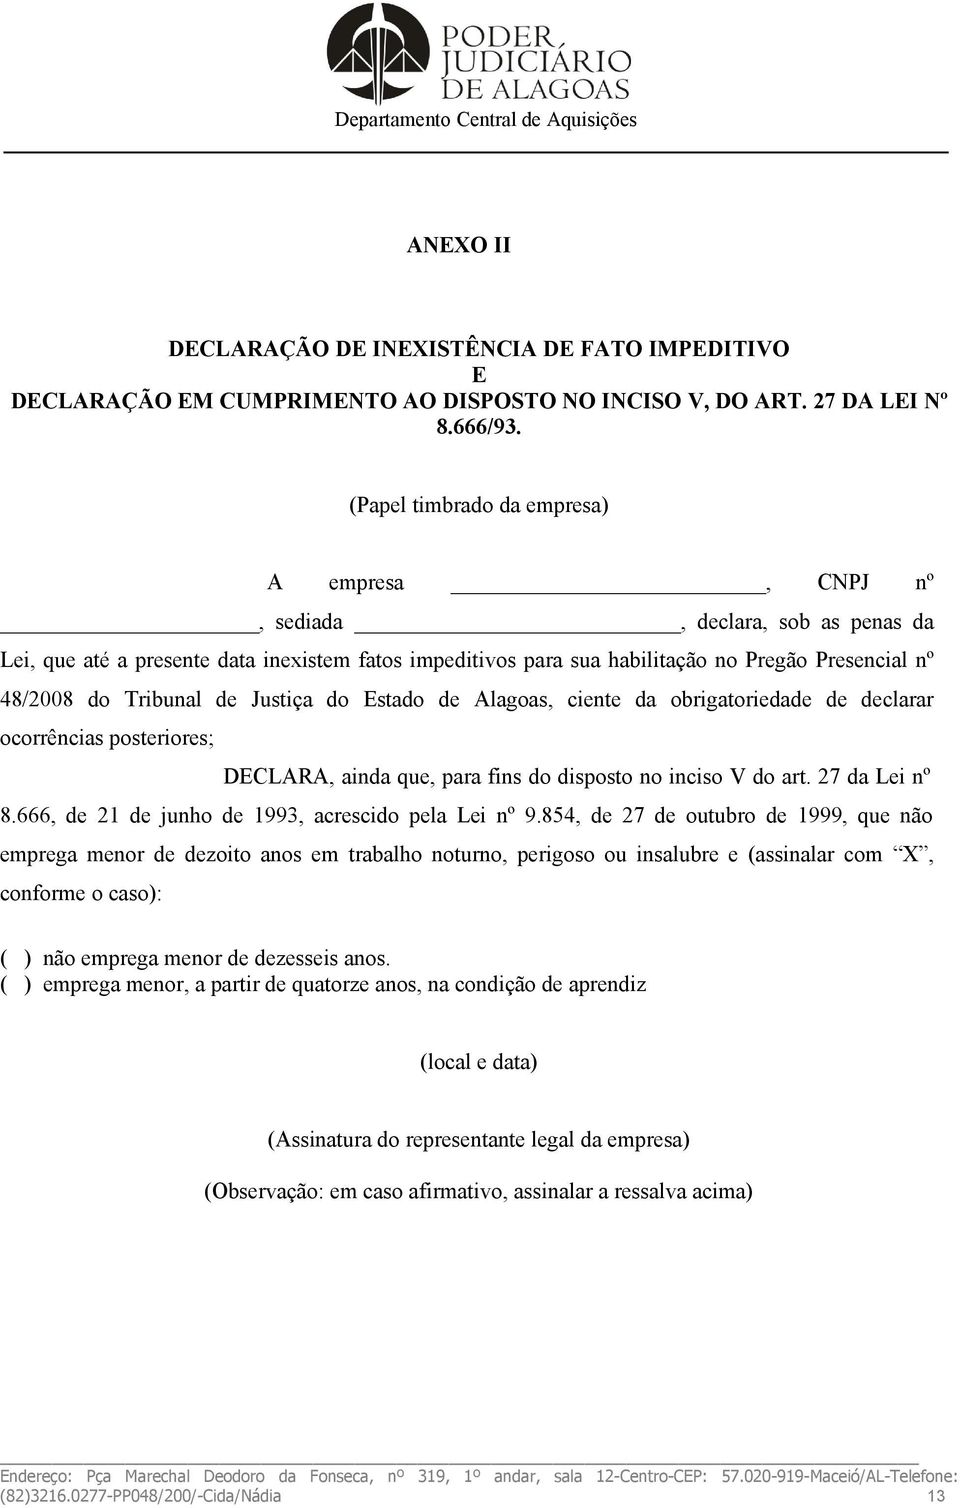 Tribunal de Justiça do Estado de Alagoas, ciente da obrigatoriedade de declarar ocorrências posteriores; DECLARA, ainda que, para fins do disposto no inciso V do art. 27 da Lei nº 8.